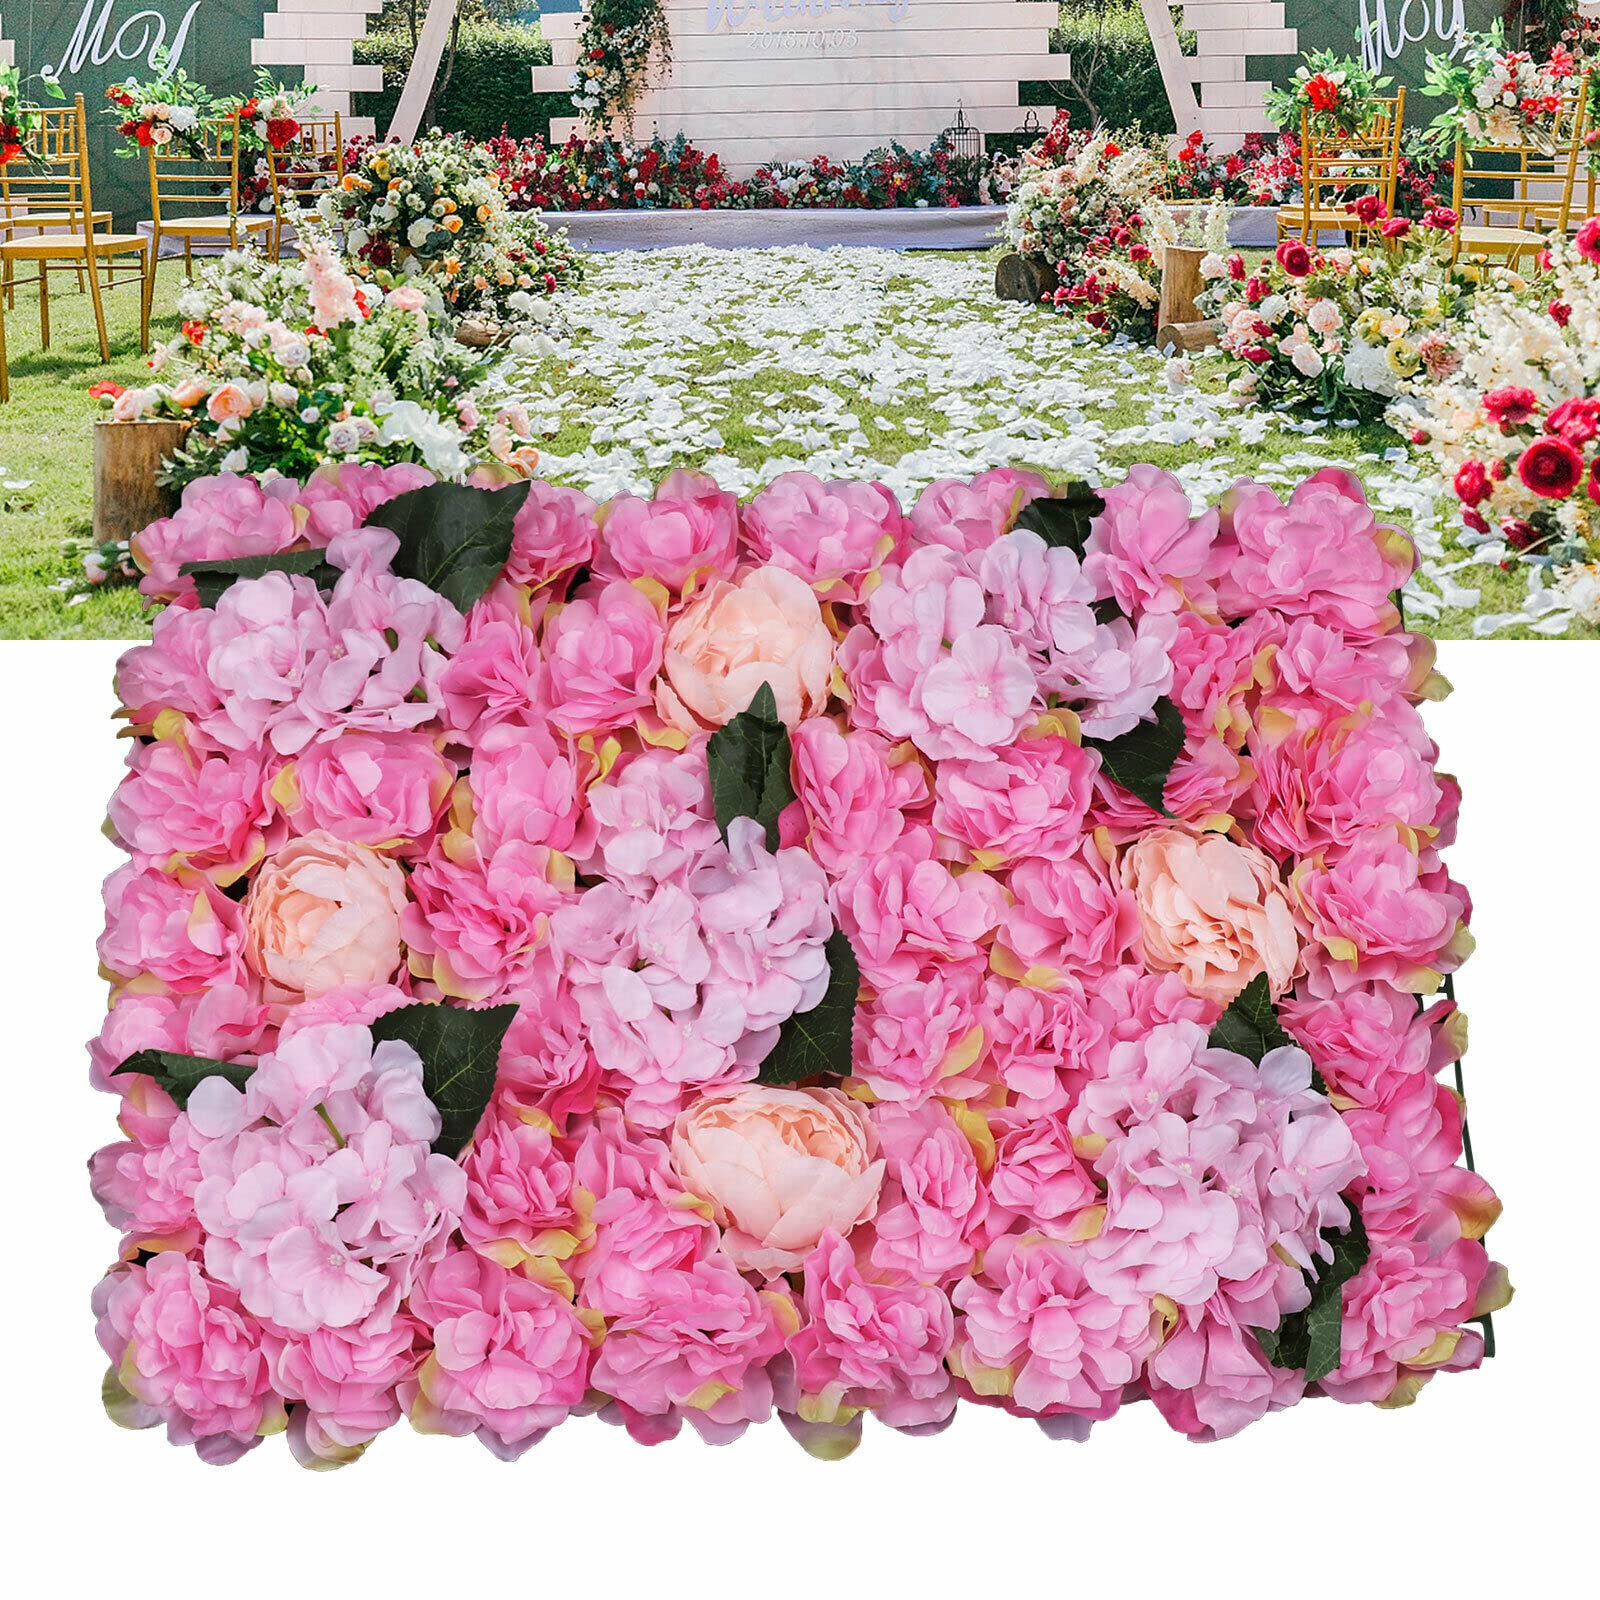  Colonna di fiori artificiali da parete, 6 pezzi, decorazione fai da te, per giardino, matrimonio, 40 x 60 cm